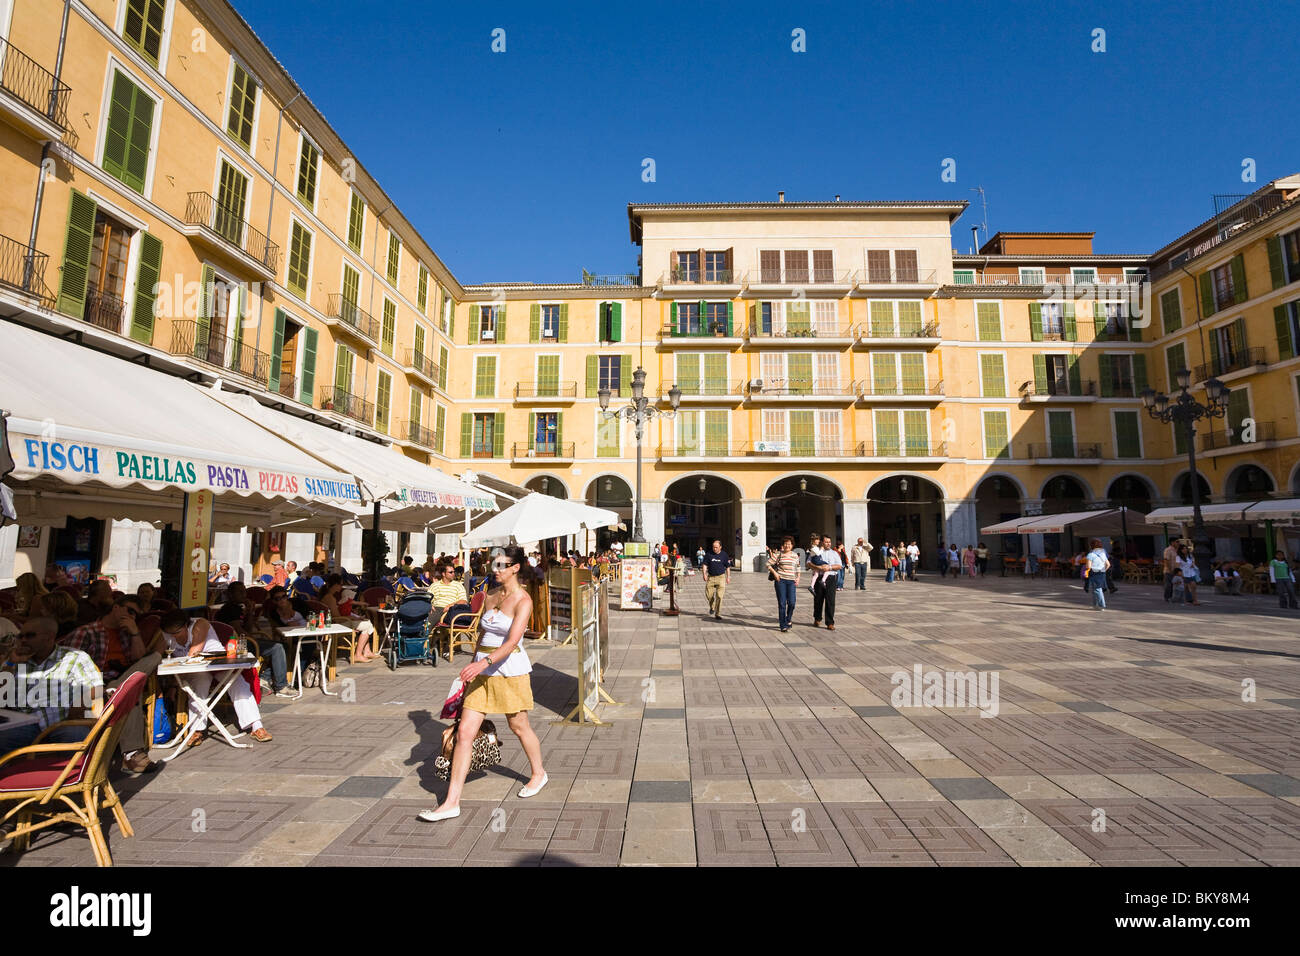 Quadrato con le persone e le caffetterie nella luce del sole si Placa Major, Palma di Mallorca, Spagna, Europa Foto Stock